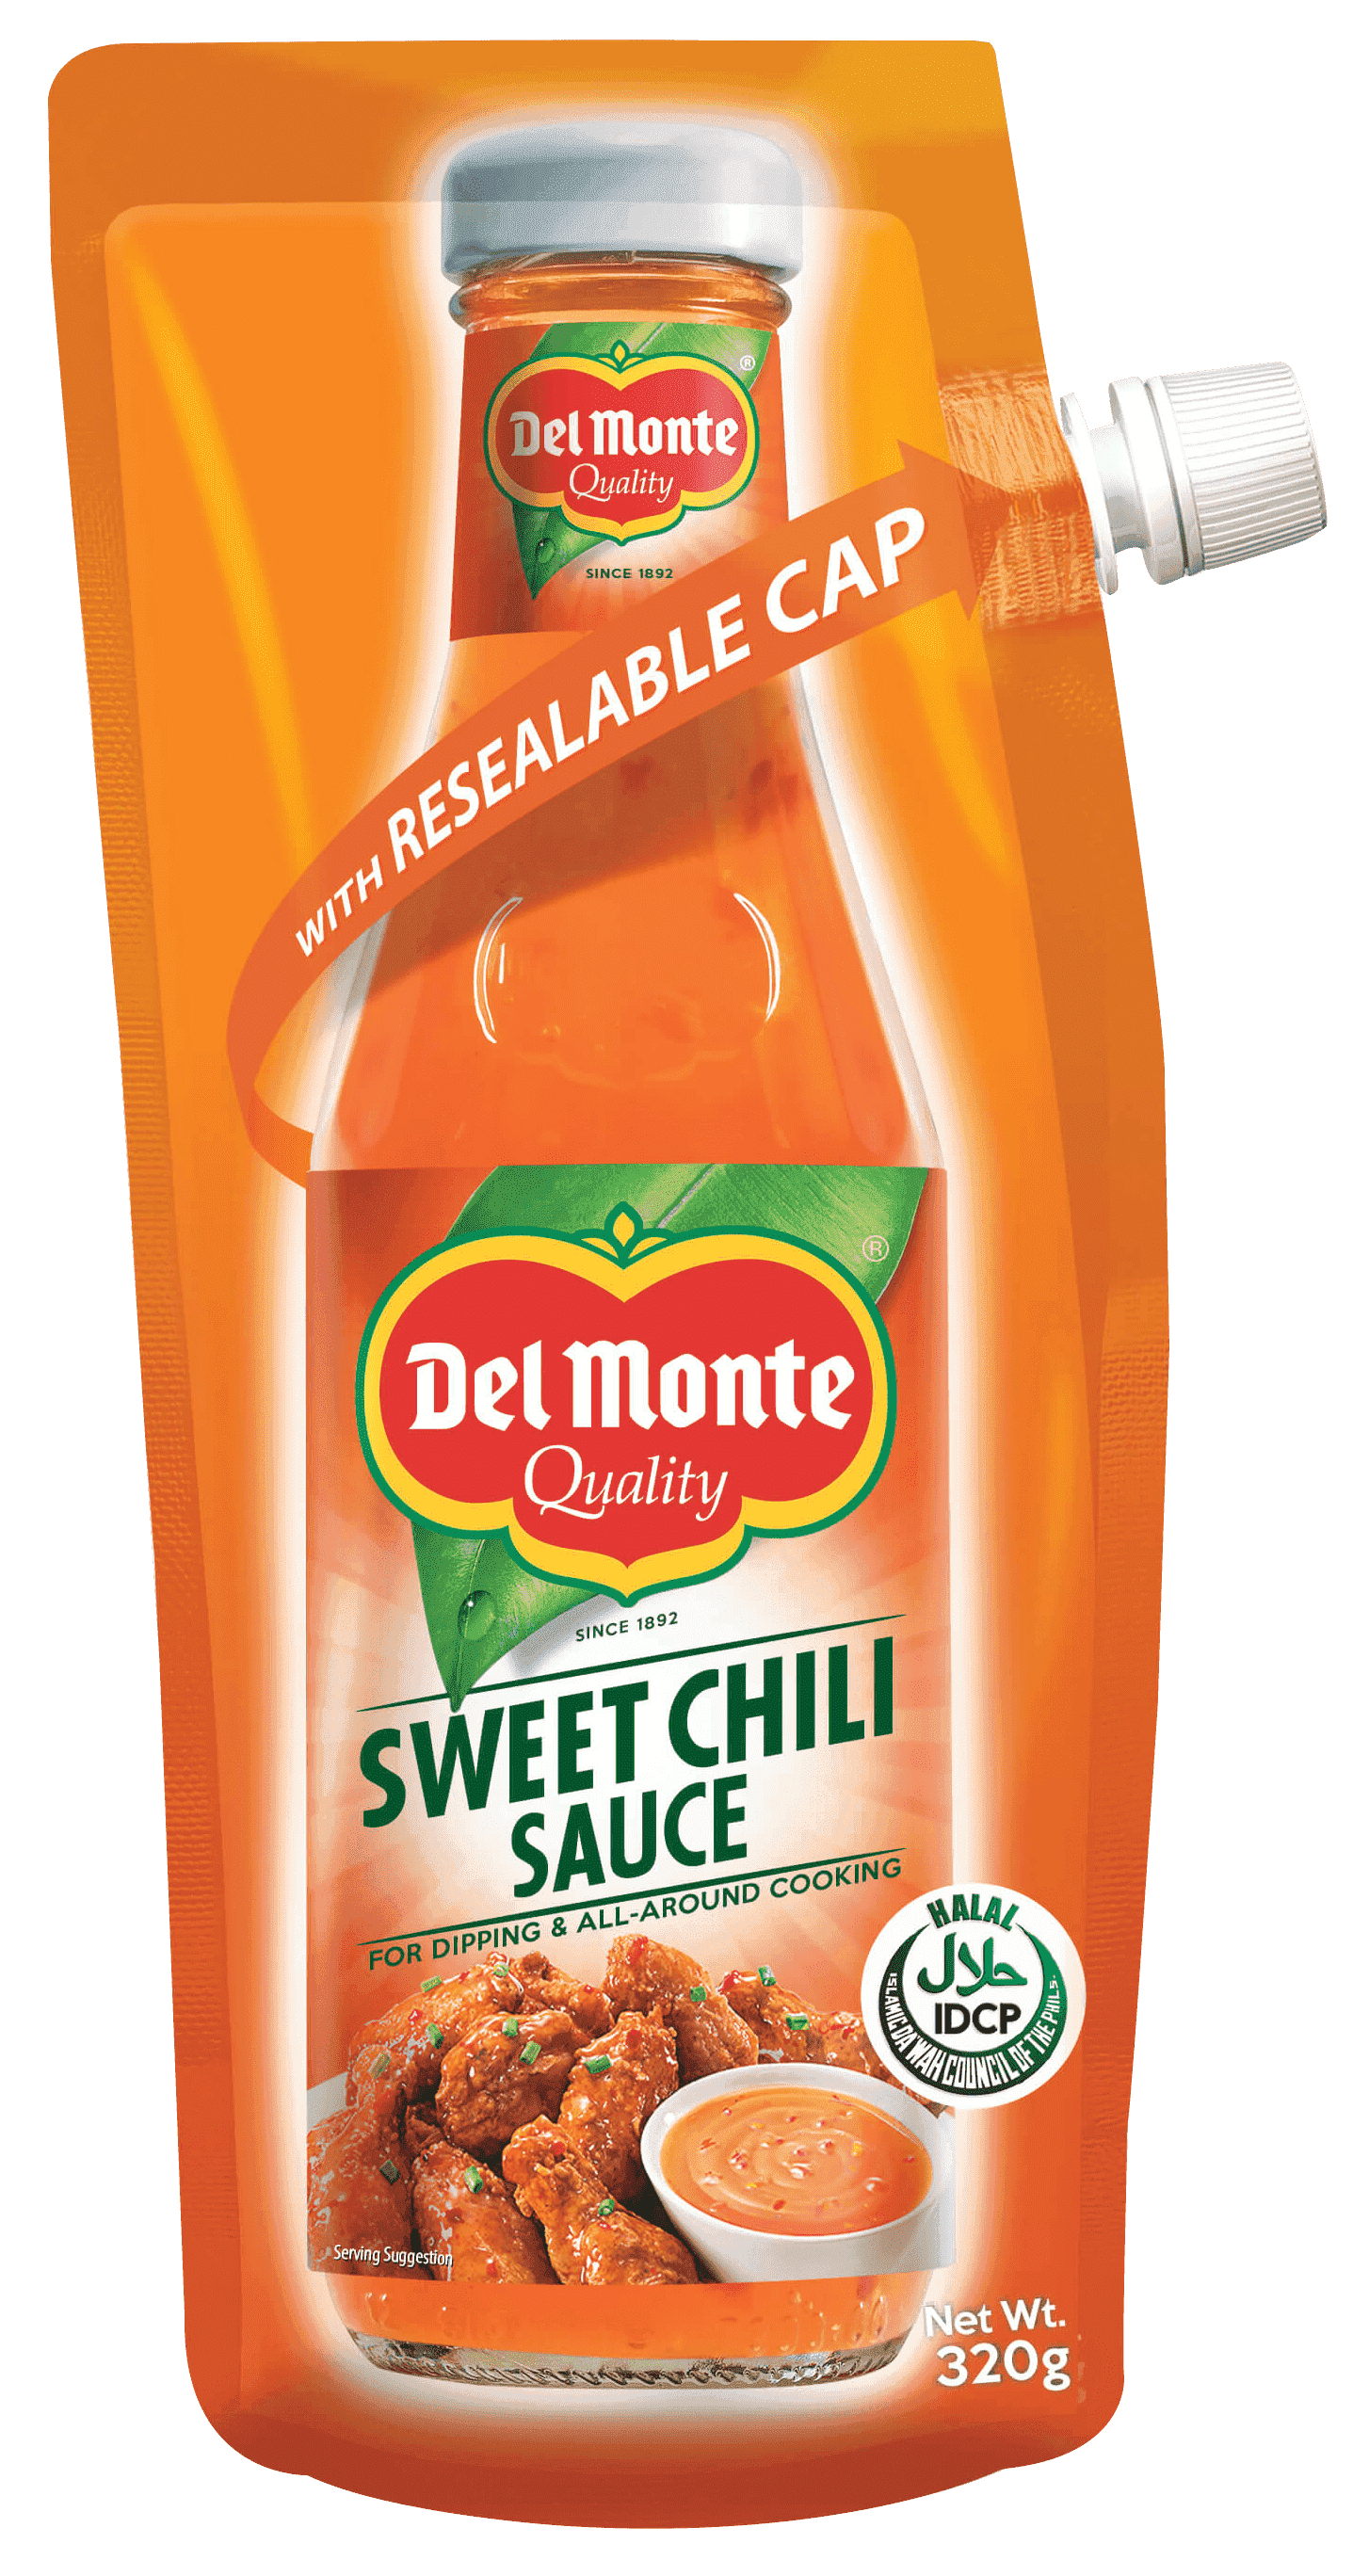 Del Monte Sweet Chili Sauce